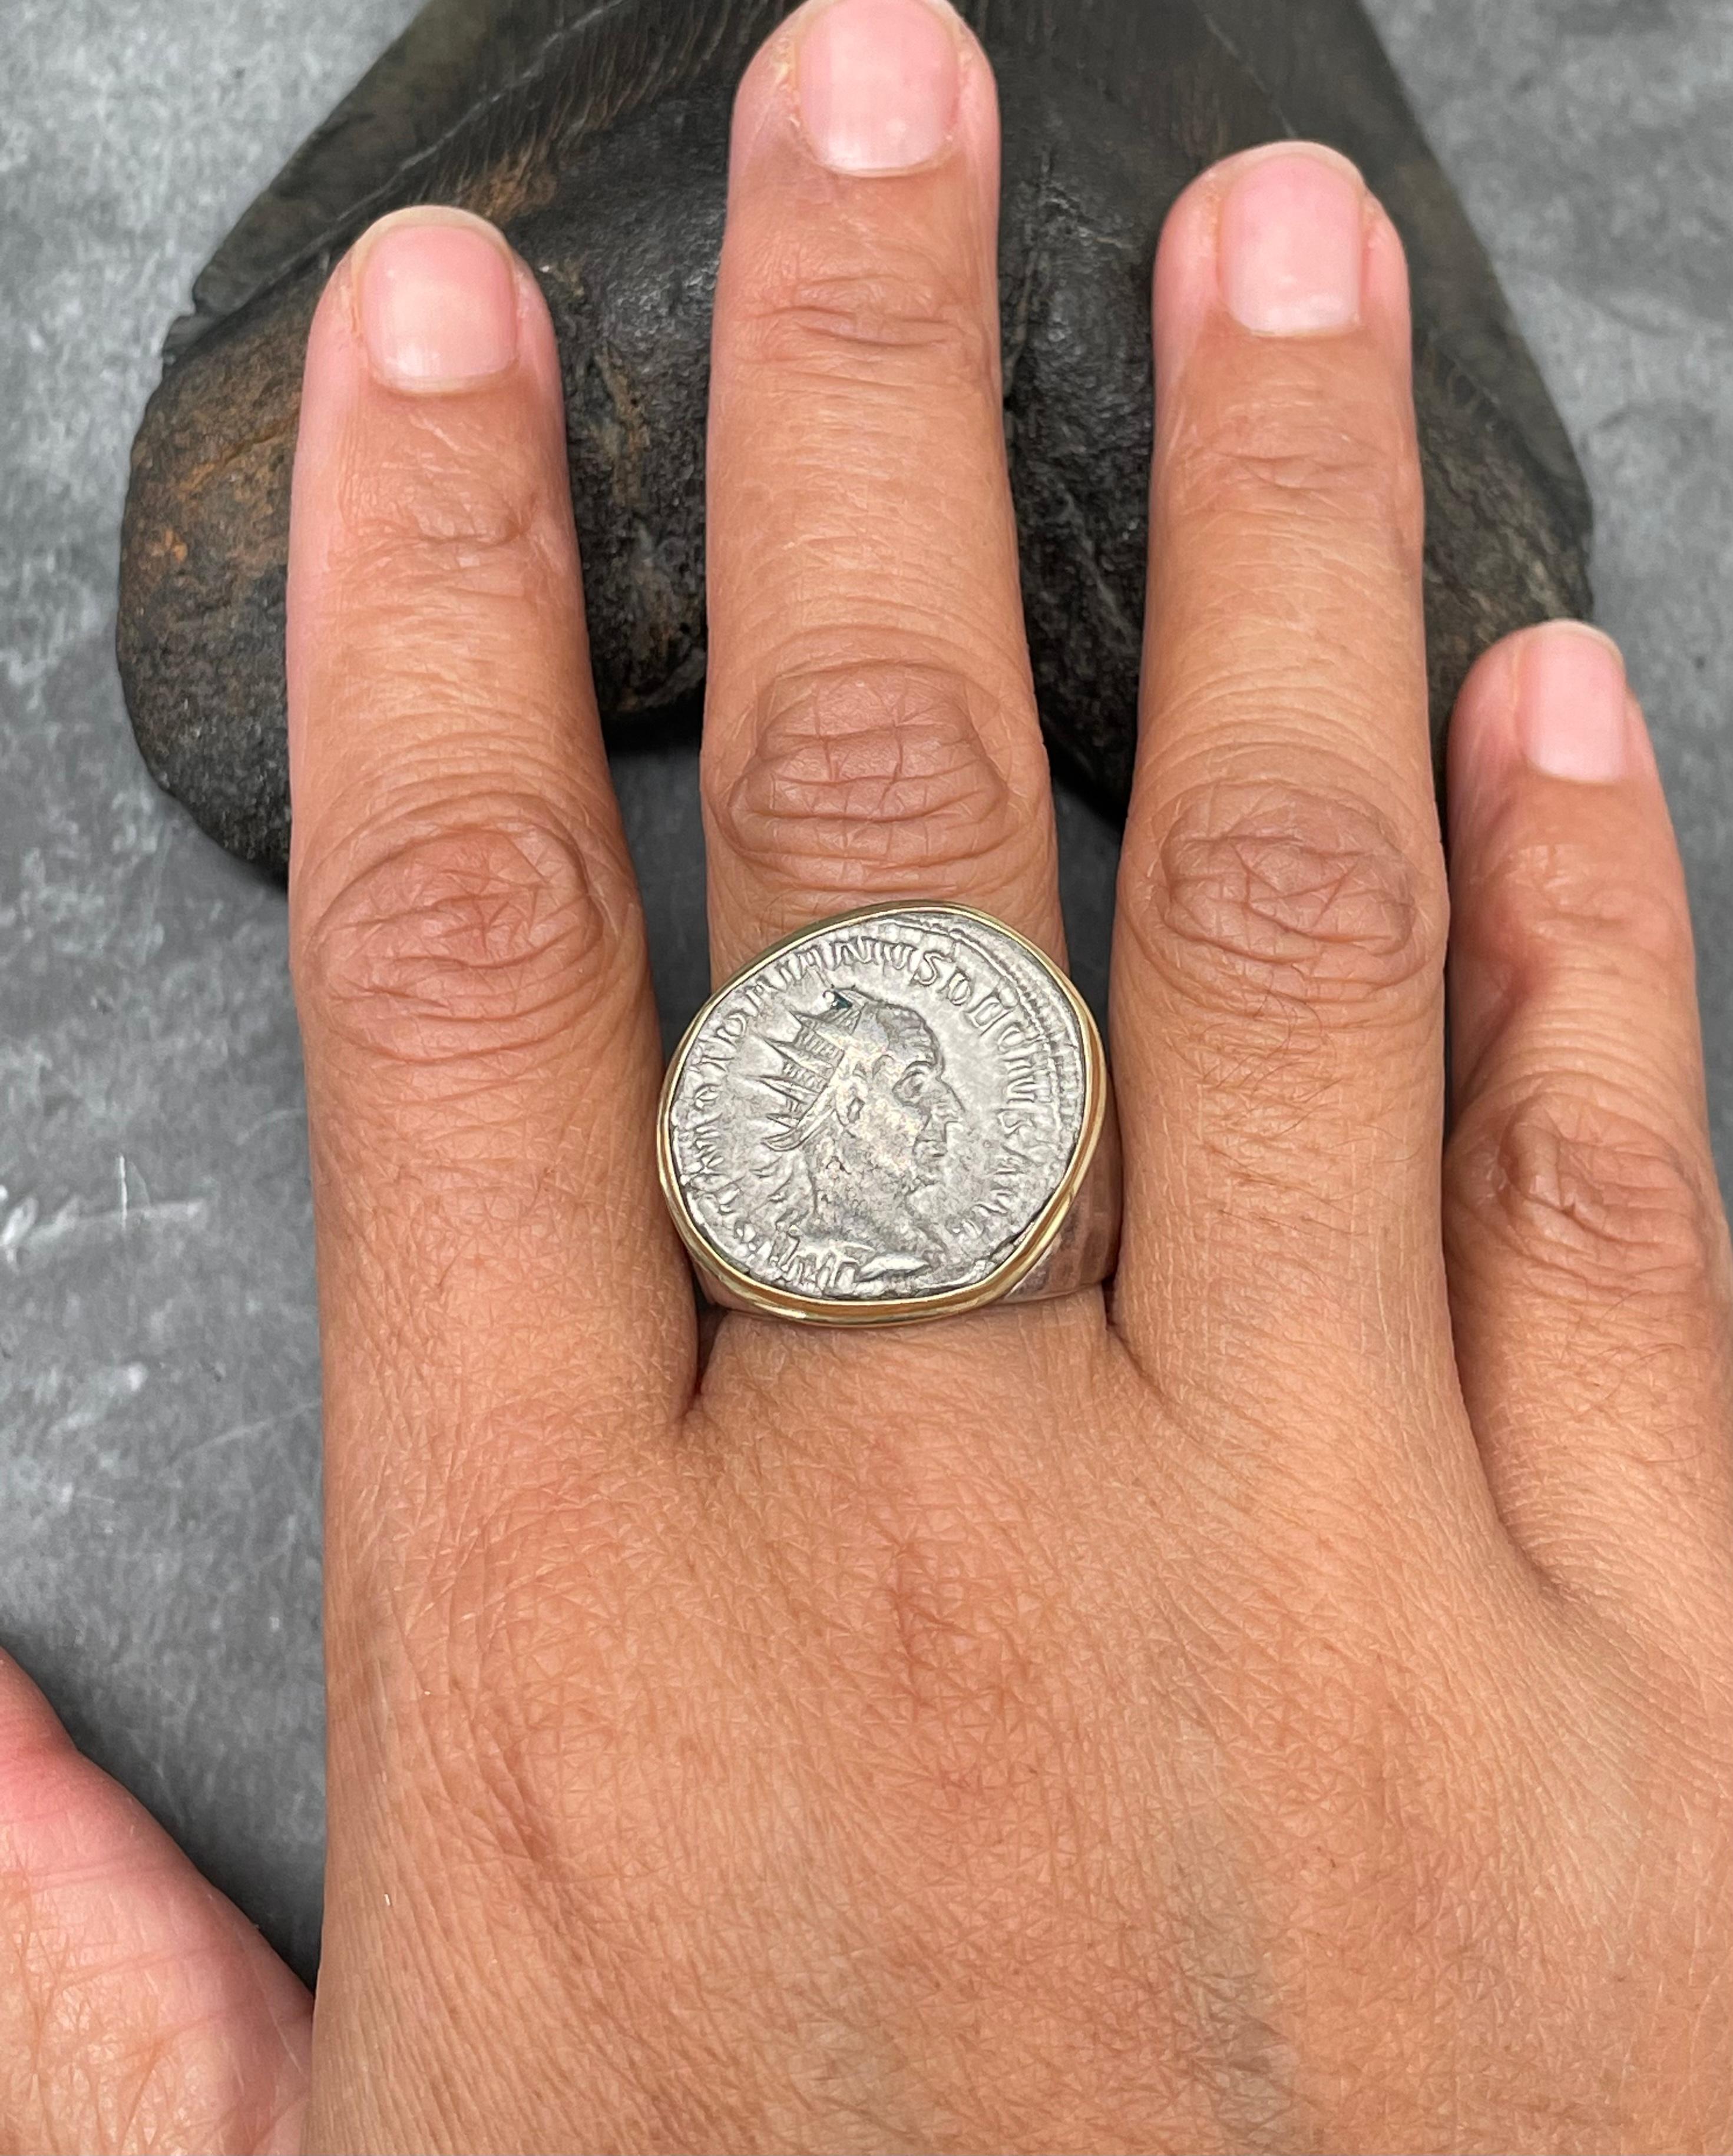 Contemporary Ancient Roman 3rd Century Emperor Trajan Decius Coin Mens Silver 18K Gold Ring